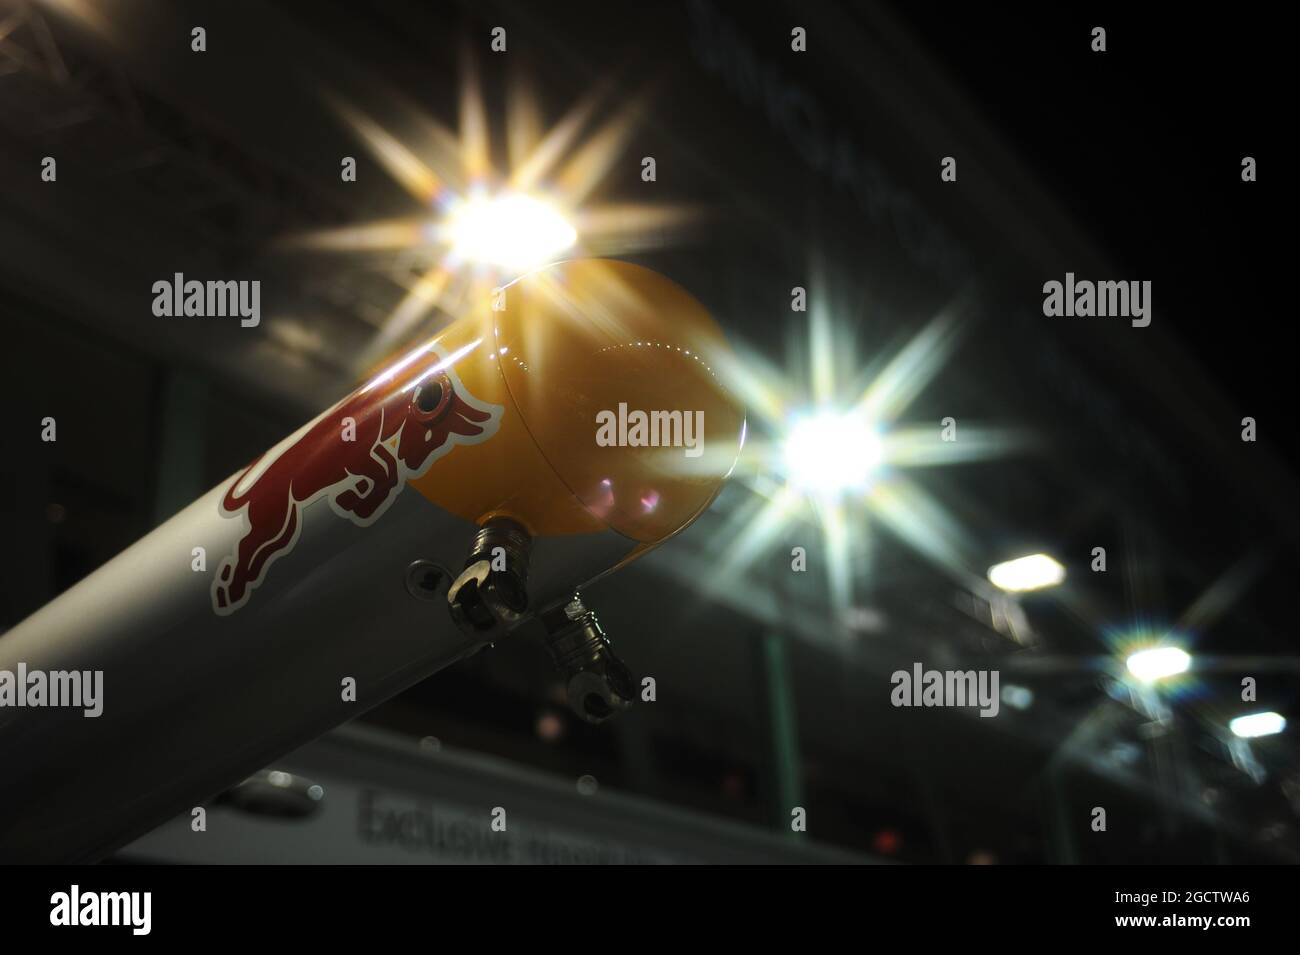 Red Bull Racing pit stop attrezzature. Gran Premio di Singapore, sabato 20 settembre 2014. Circuito Marina Bay Street, Singapore. Foto Stock